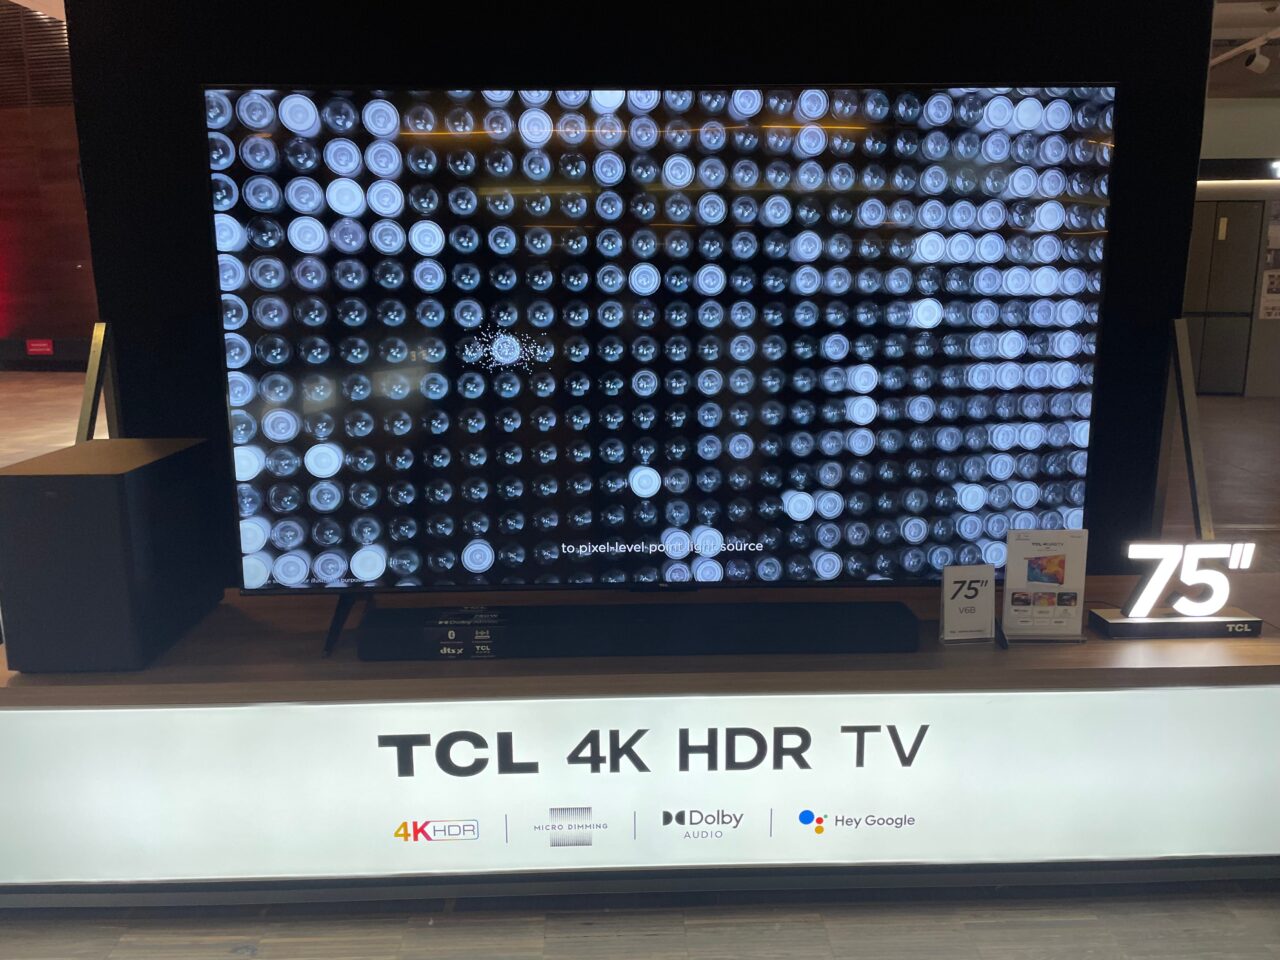 75-calowy telewizor TCL 4K HDR na wystawie, z ekranem wyświetlającym abstrakcyjny wzór.